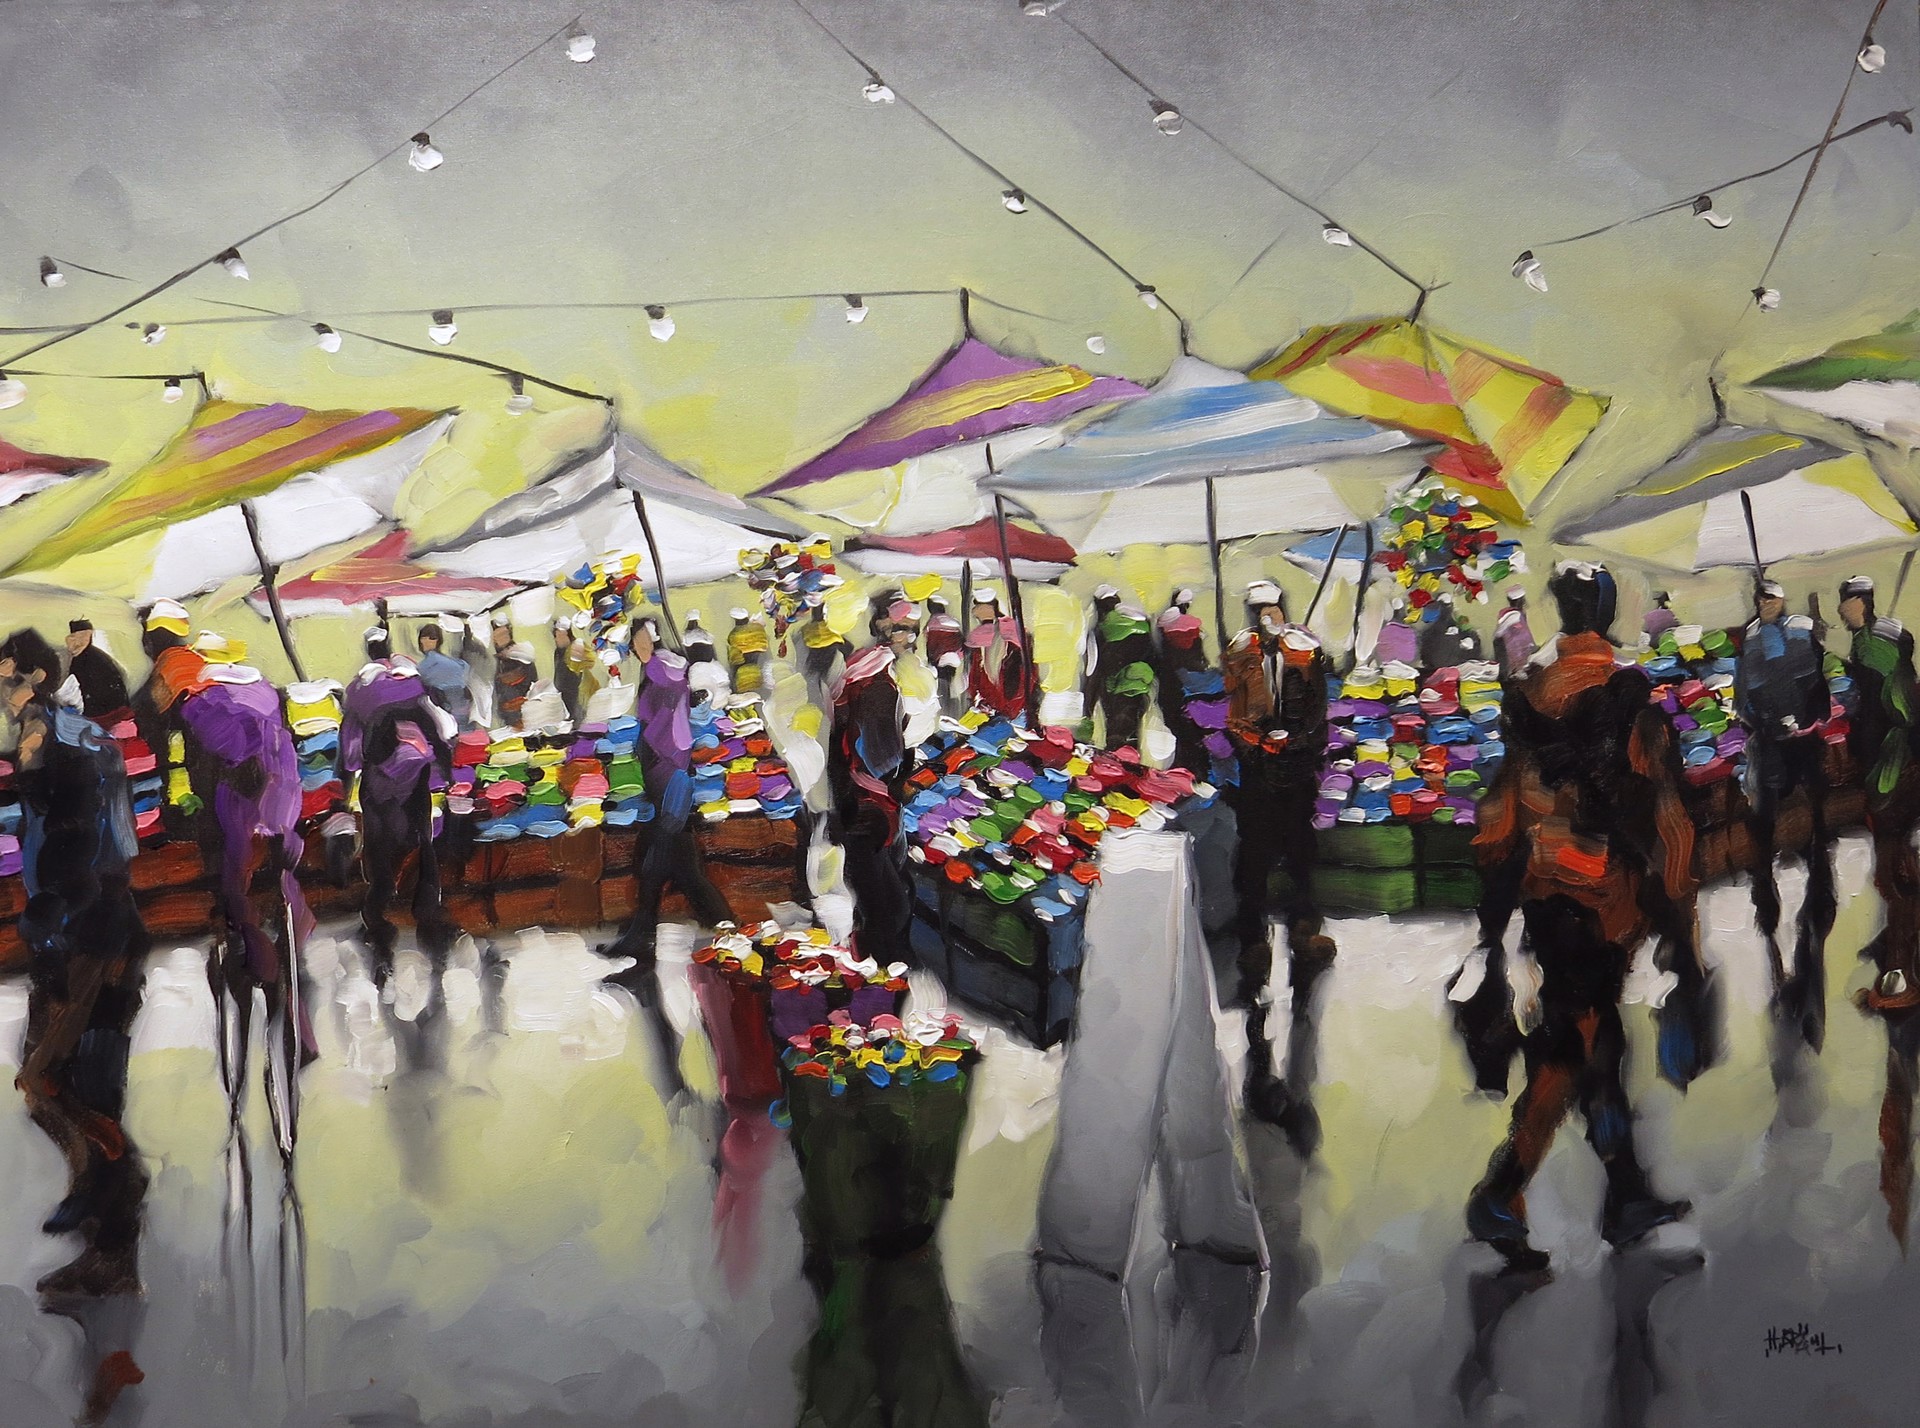 Market by Harold Braul